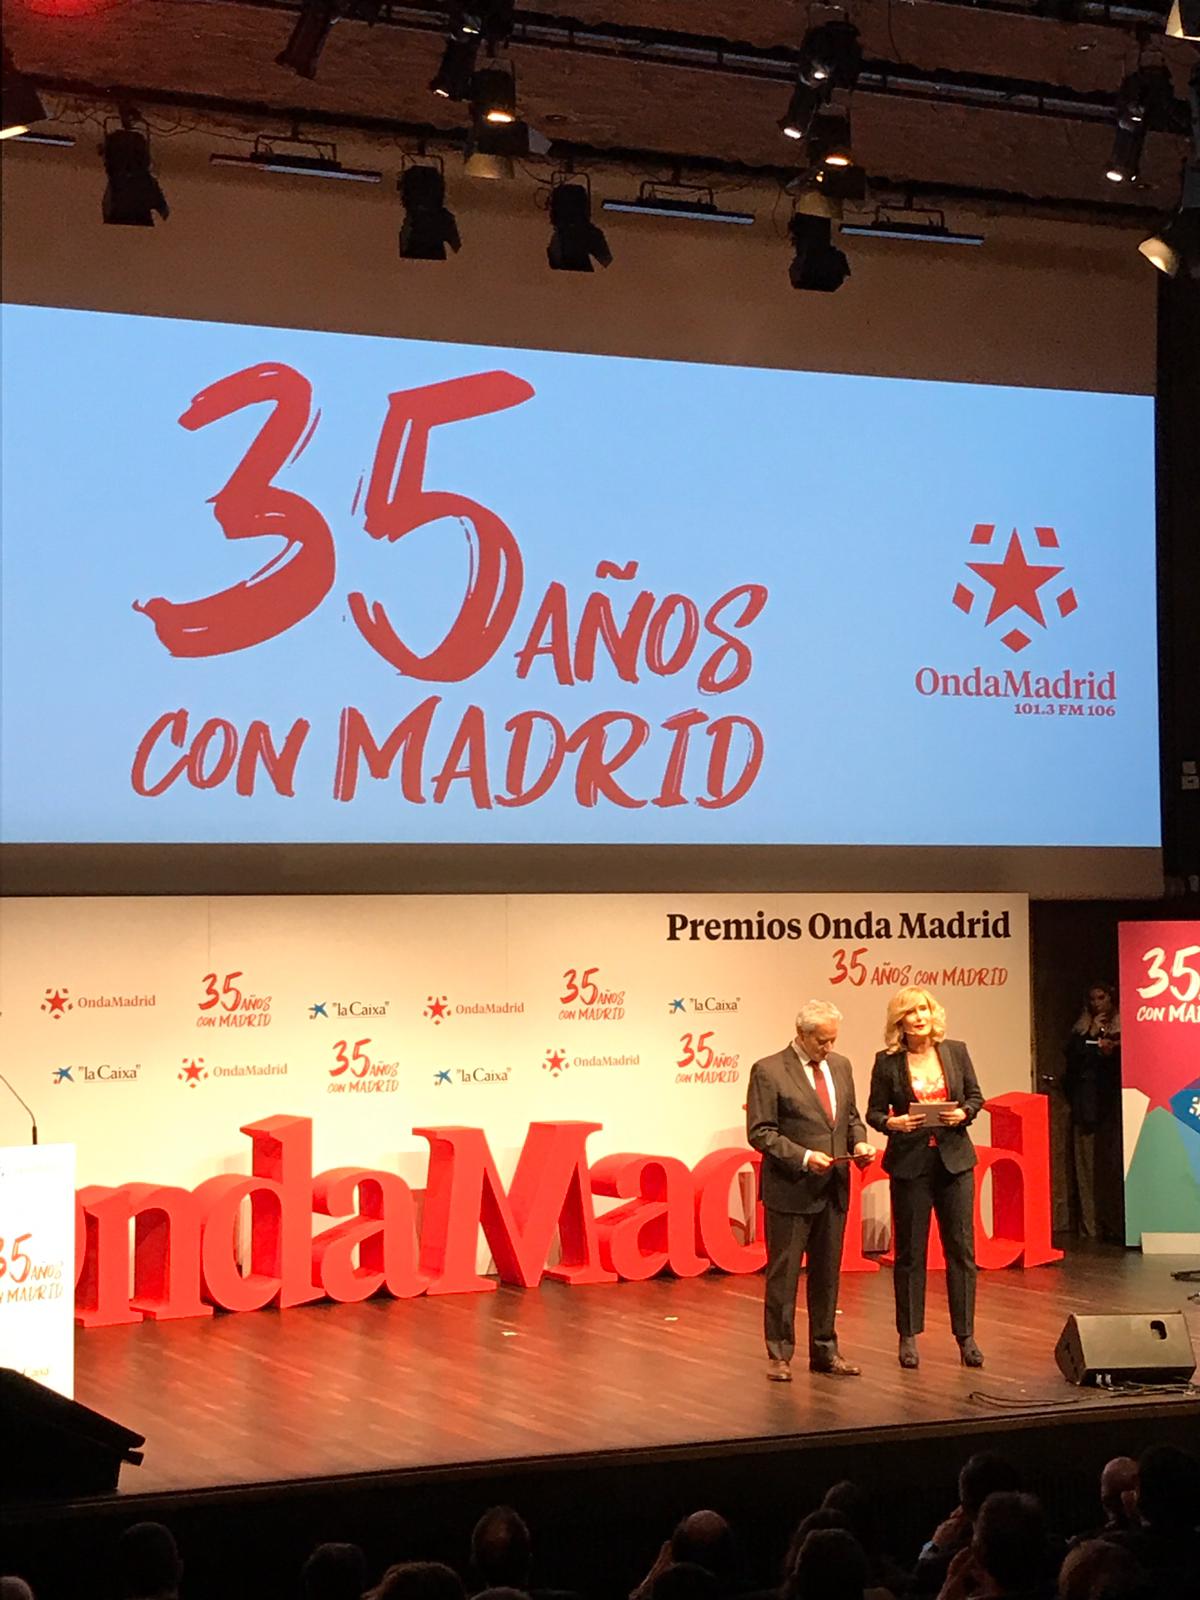 Ángel Rubio se compromete mientras sea director de Onda Madrid a "un apoyo firme frente a los que quieran recortar los derechos LGTBI"